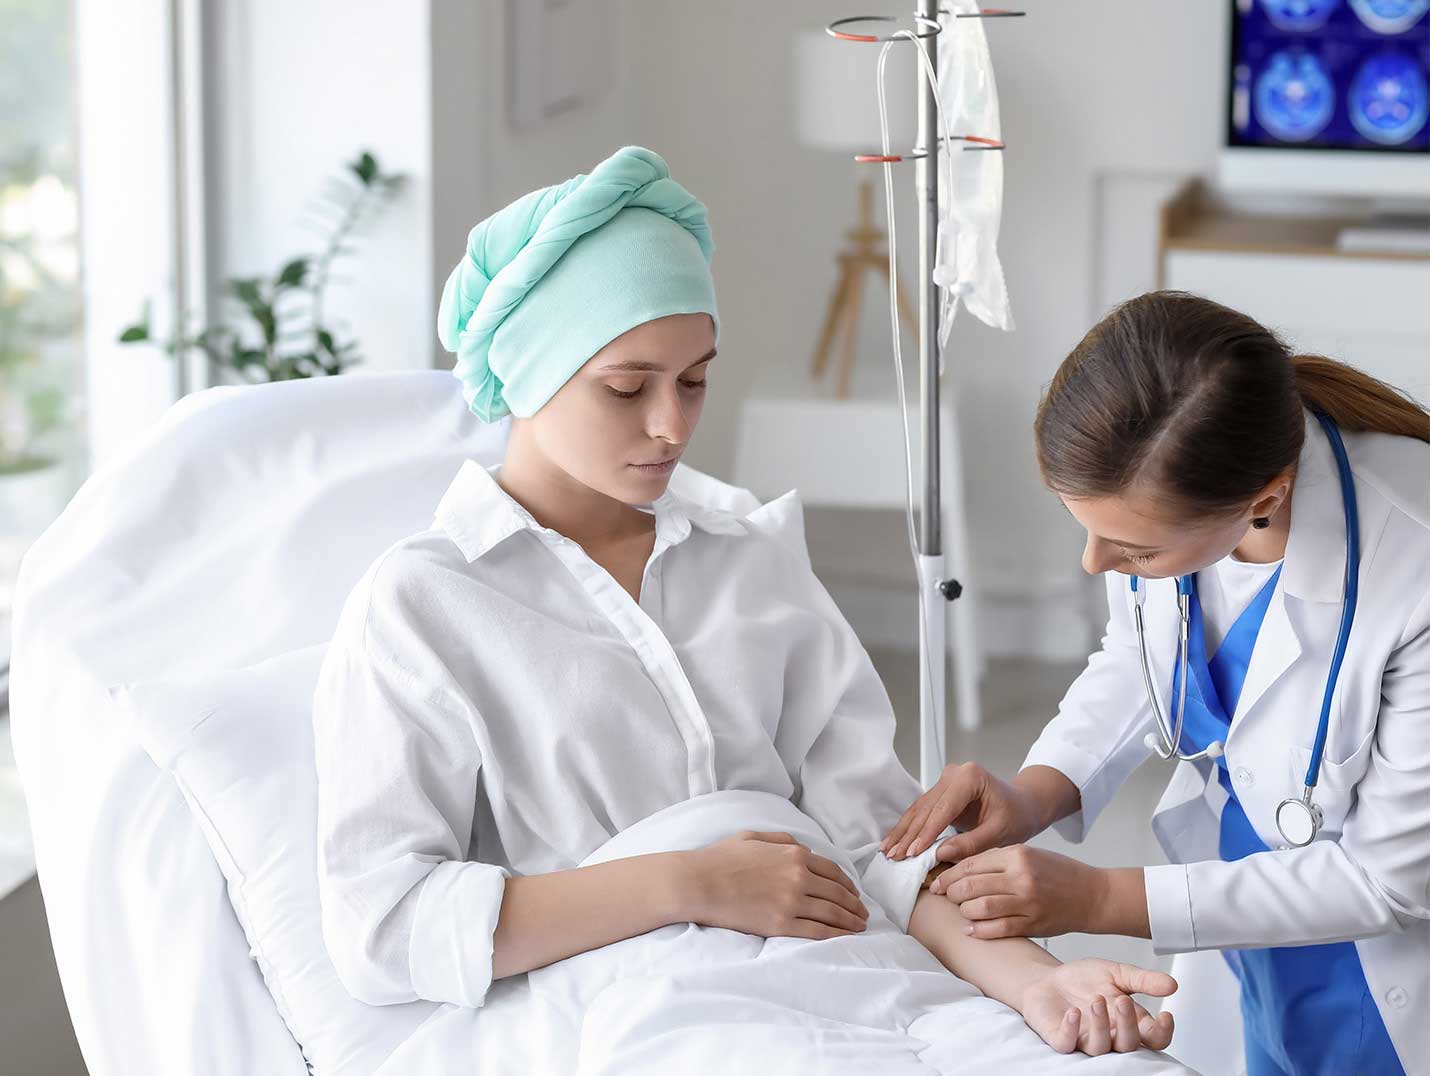 Paciente oncológico con playera blanca y mascada verde en la cabeza recostado sobre la cama siendo revisado por un especialista.